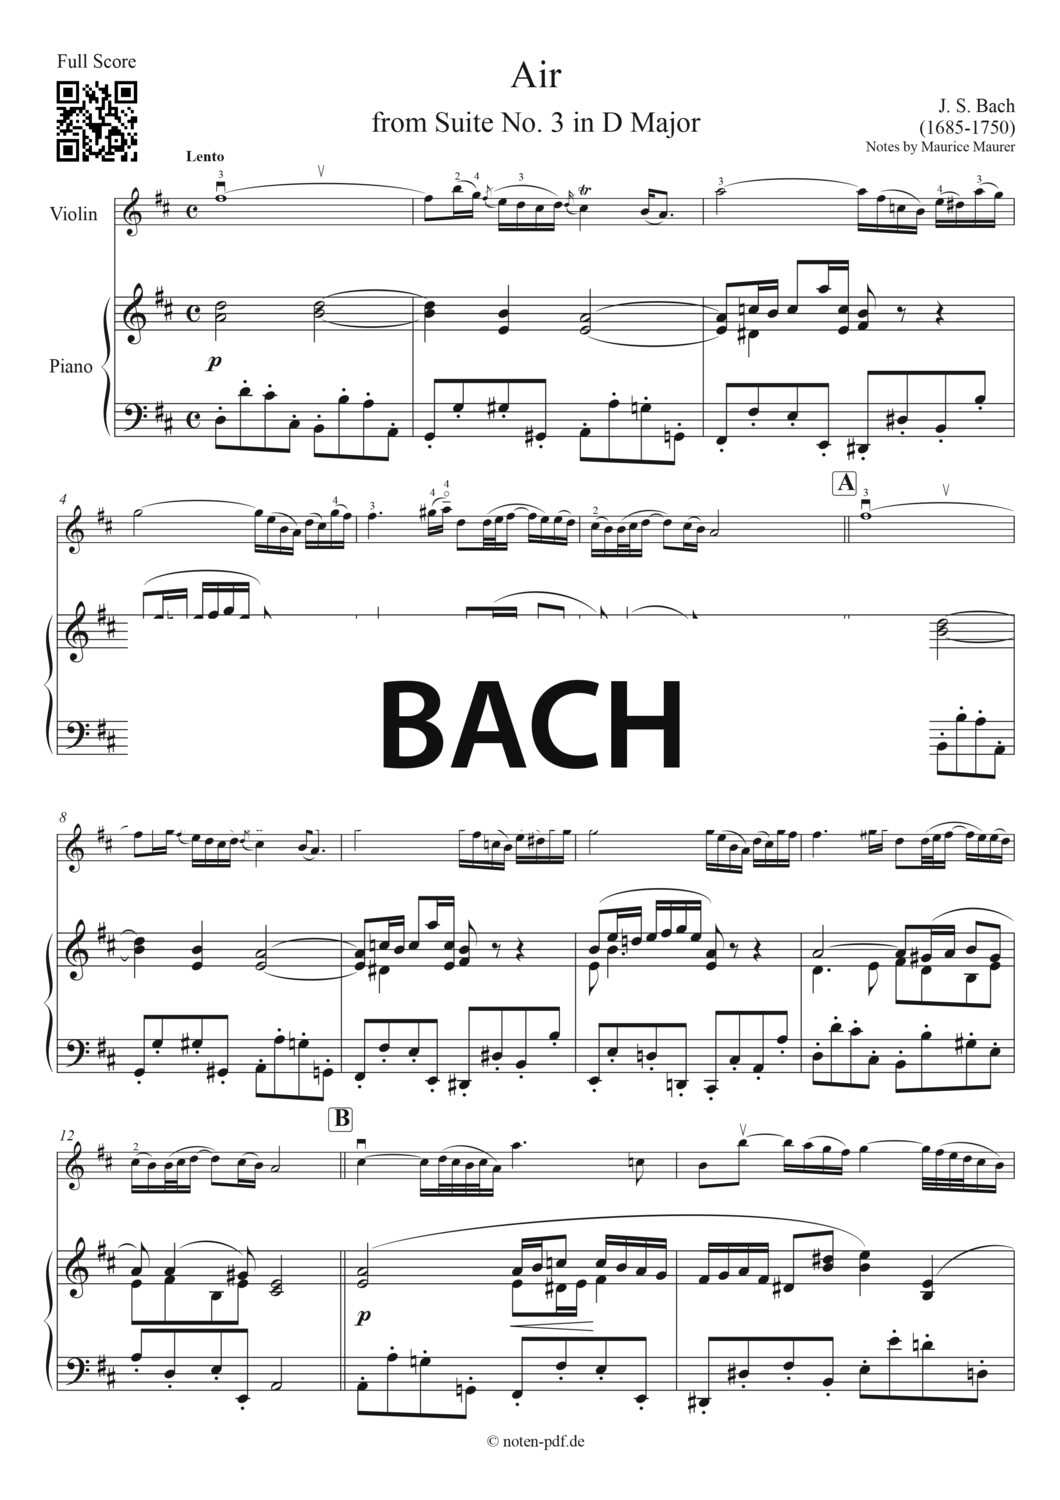 Bach: Air